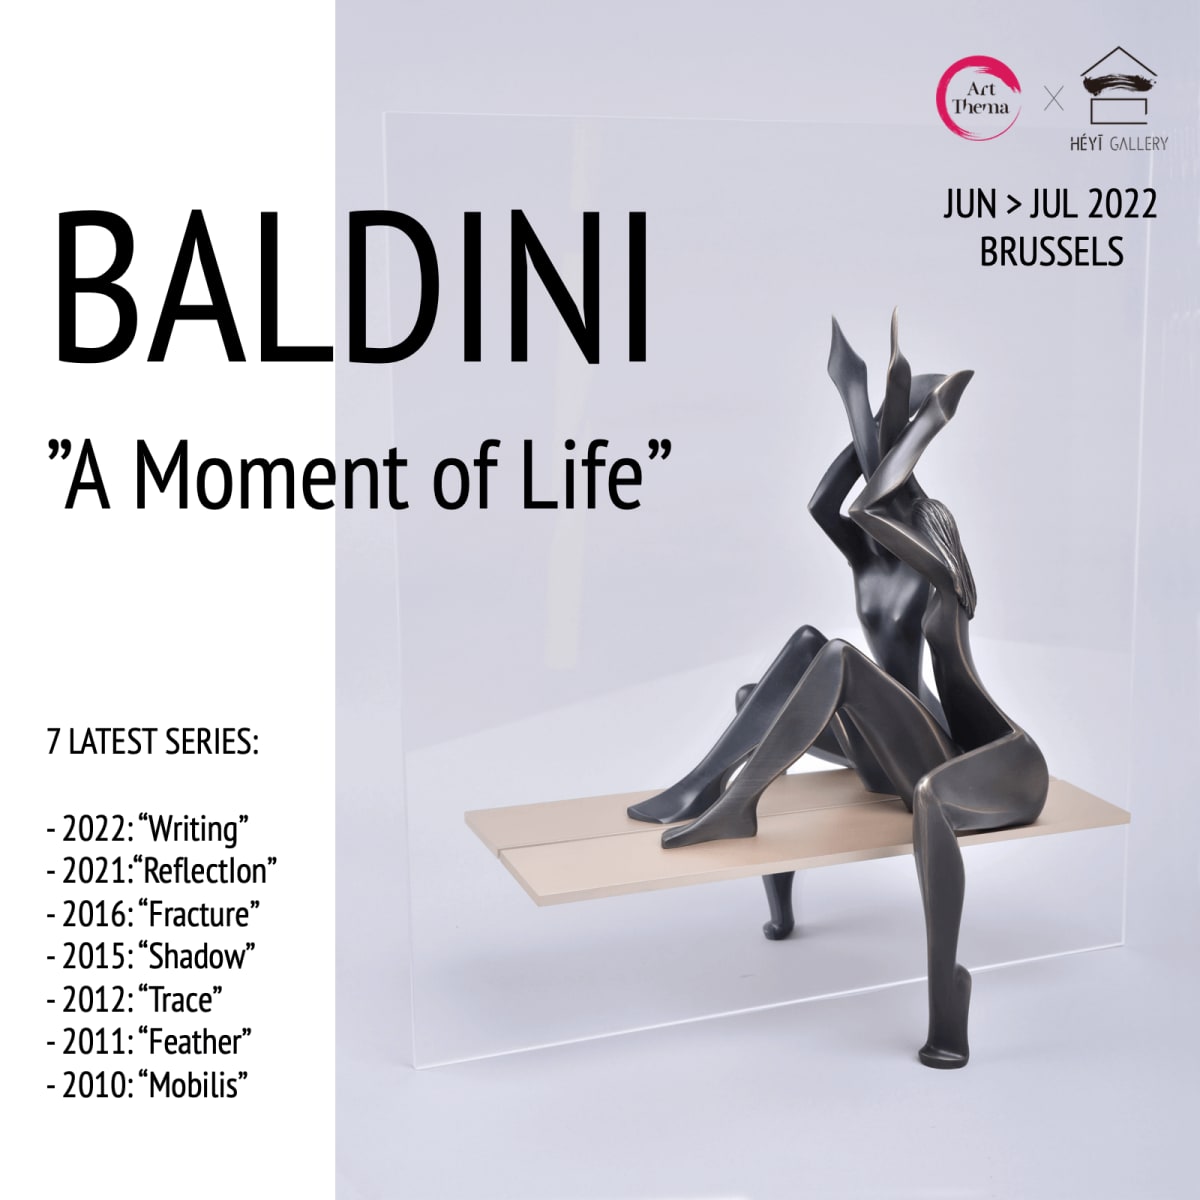 Jean-Pierre Baldini: "A Moment of Life"